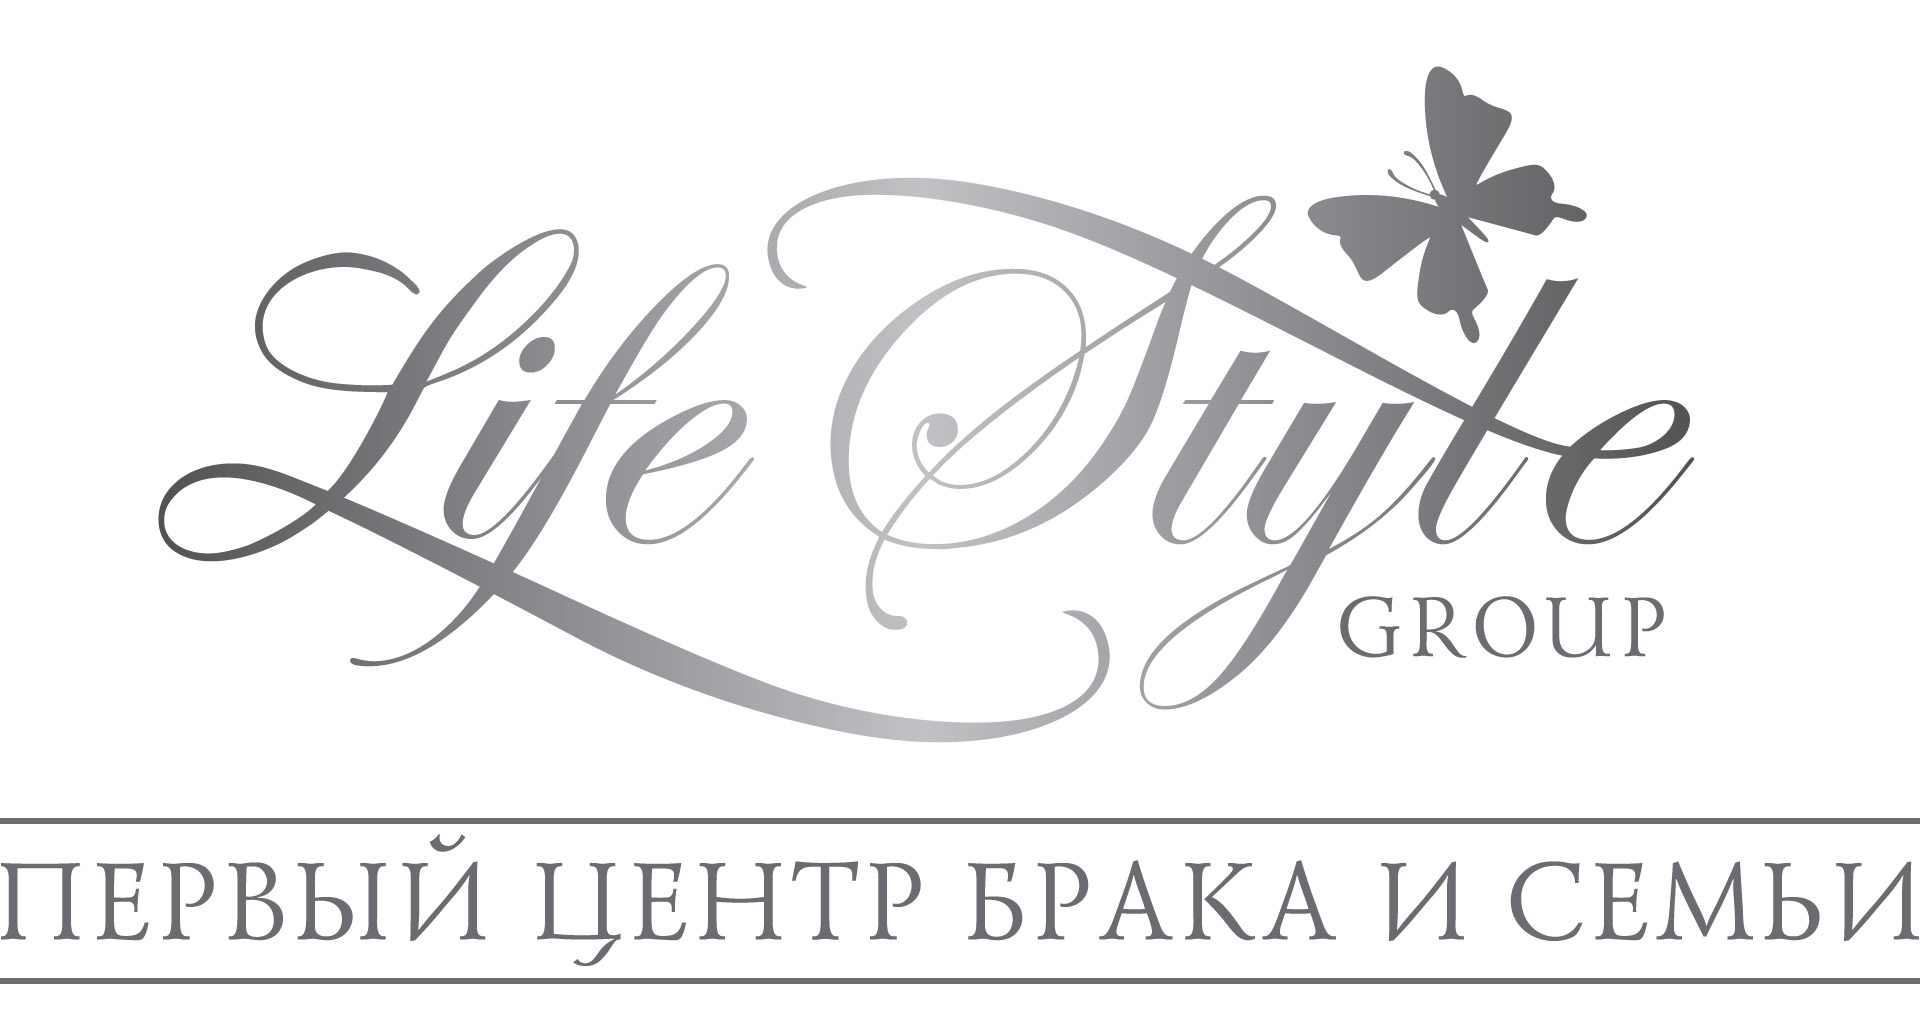 Первый центр брака и семьи. Lifestylegroup. Life Style Group. ООО стайл групп Нижний Новгород. Центр групп сайт